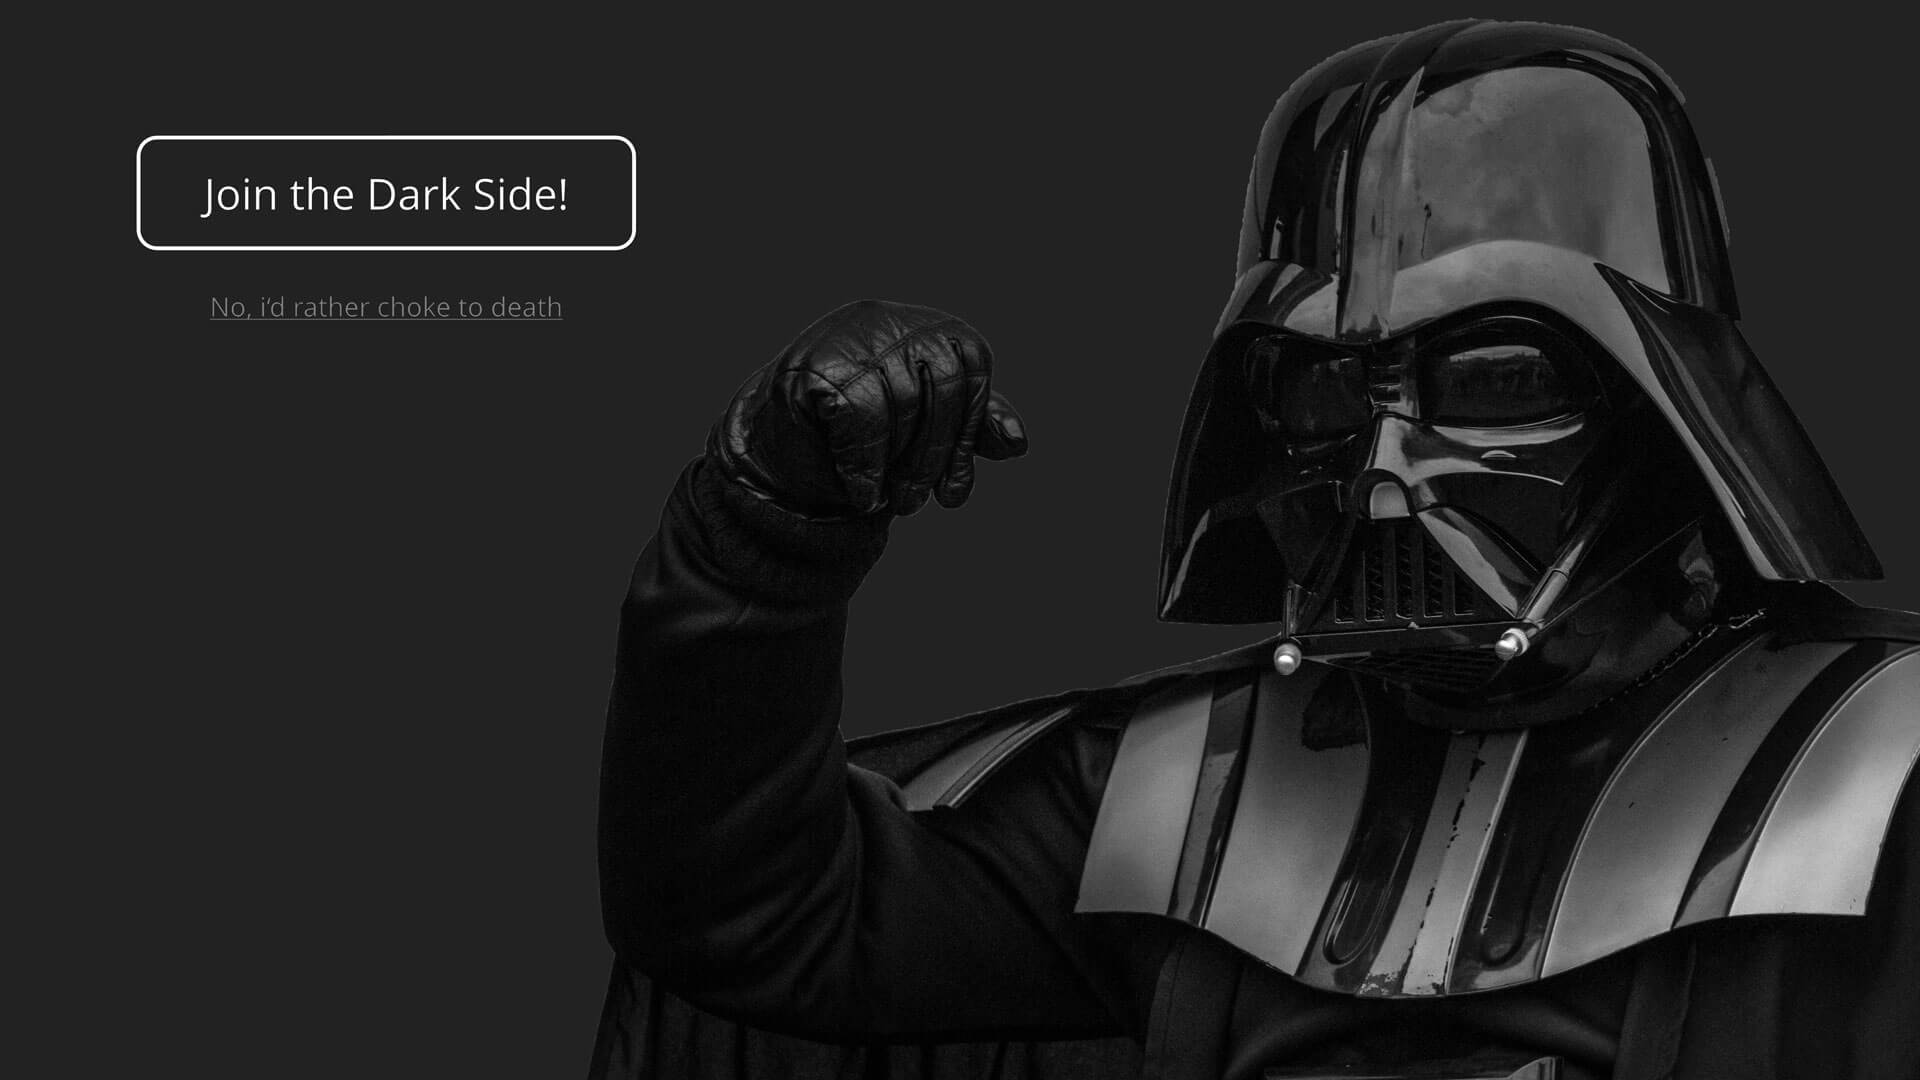 Darth Vader vor einem dunklen Hintergrund. Daneben stehen 2 Auswahlmöglichkeiten: Join the Dark Side und no, i'd rather choke to death